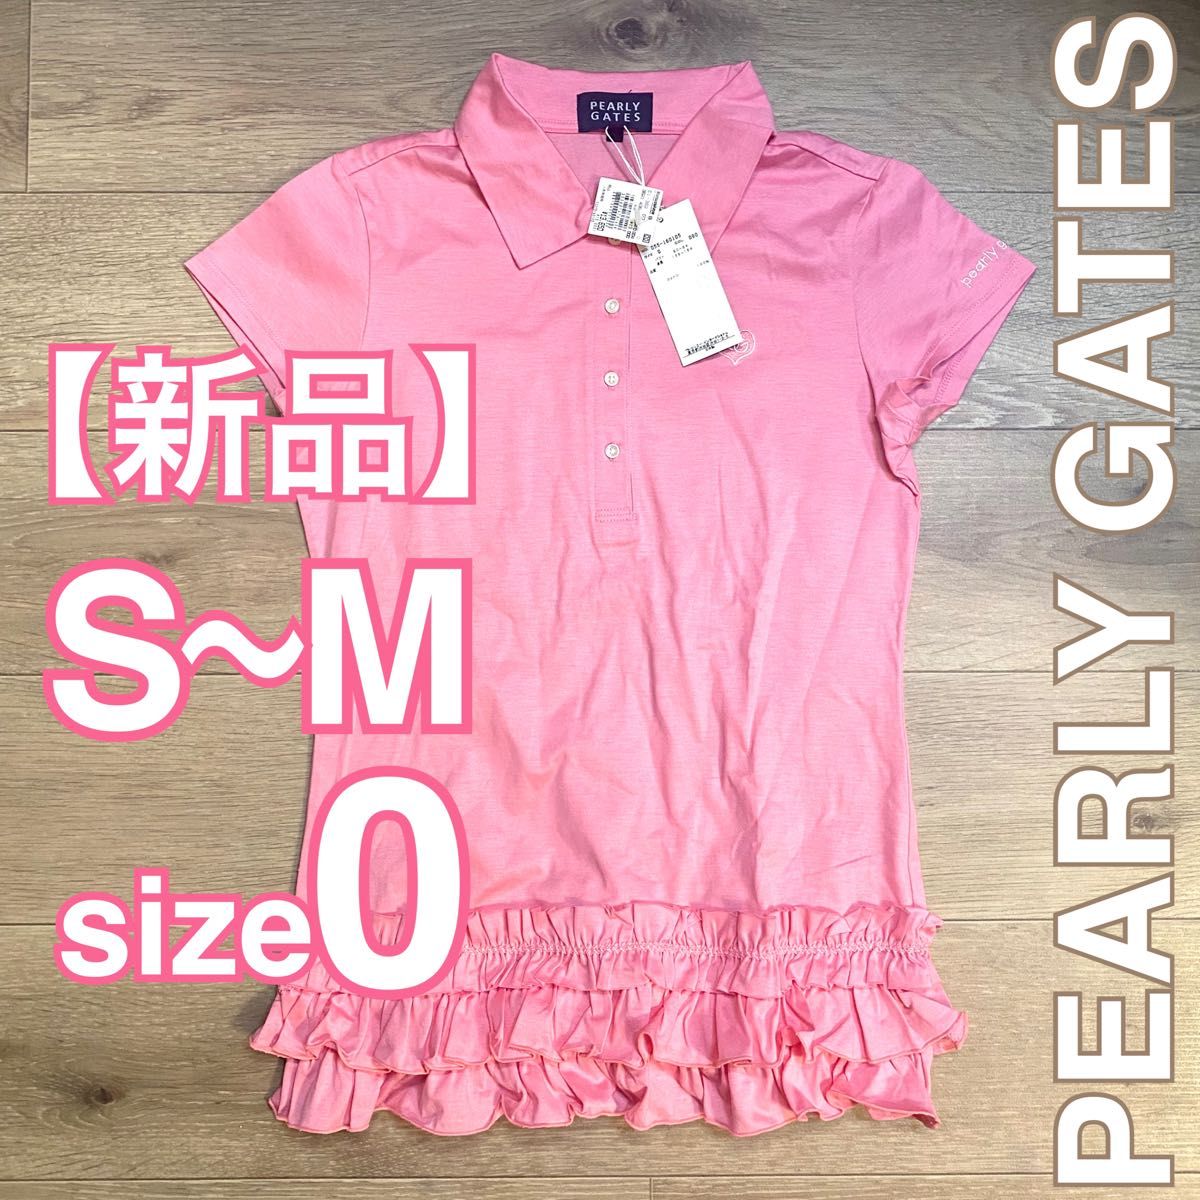 【新品】PEARLY GATES ポロシャツ size0 S〜M相当 レディース コットン100 パーリーゲイツ 可愛いデザイン